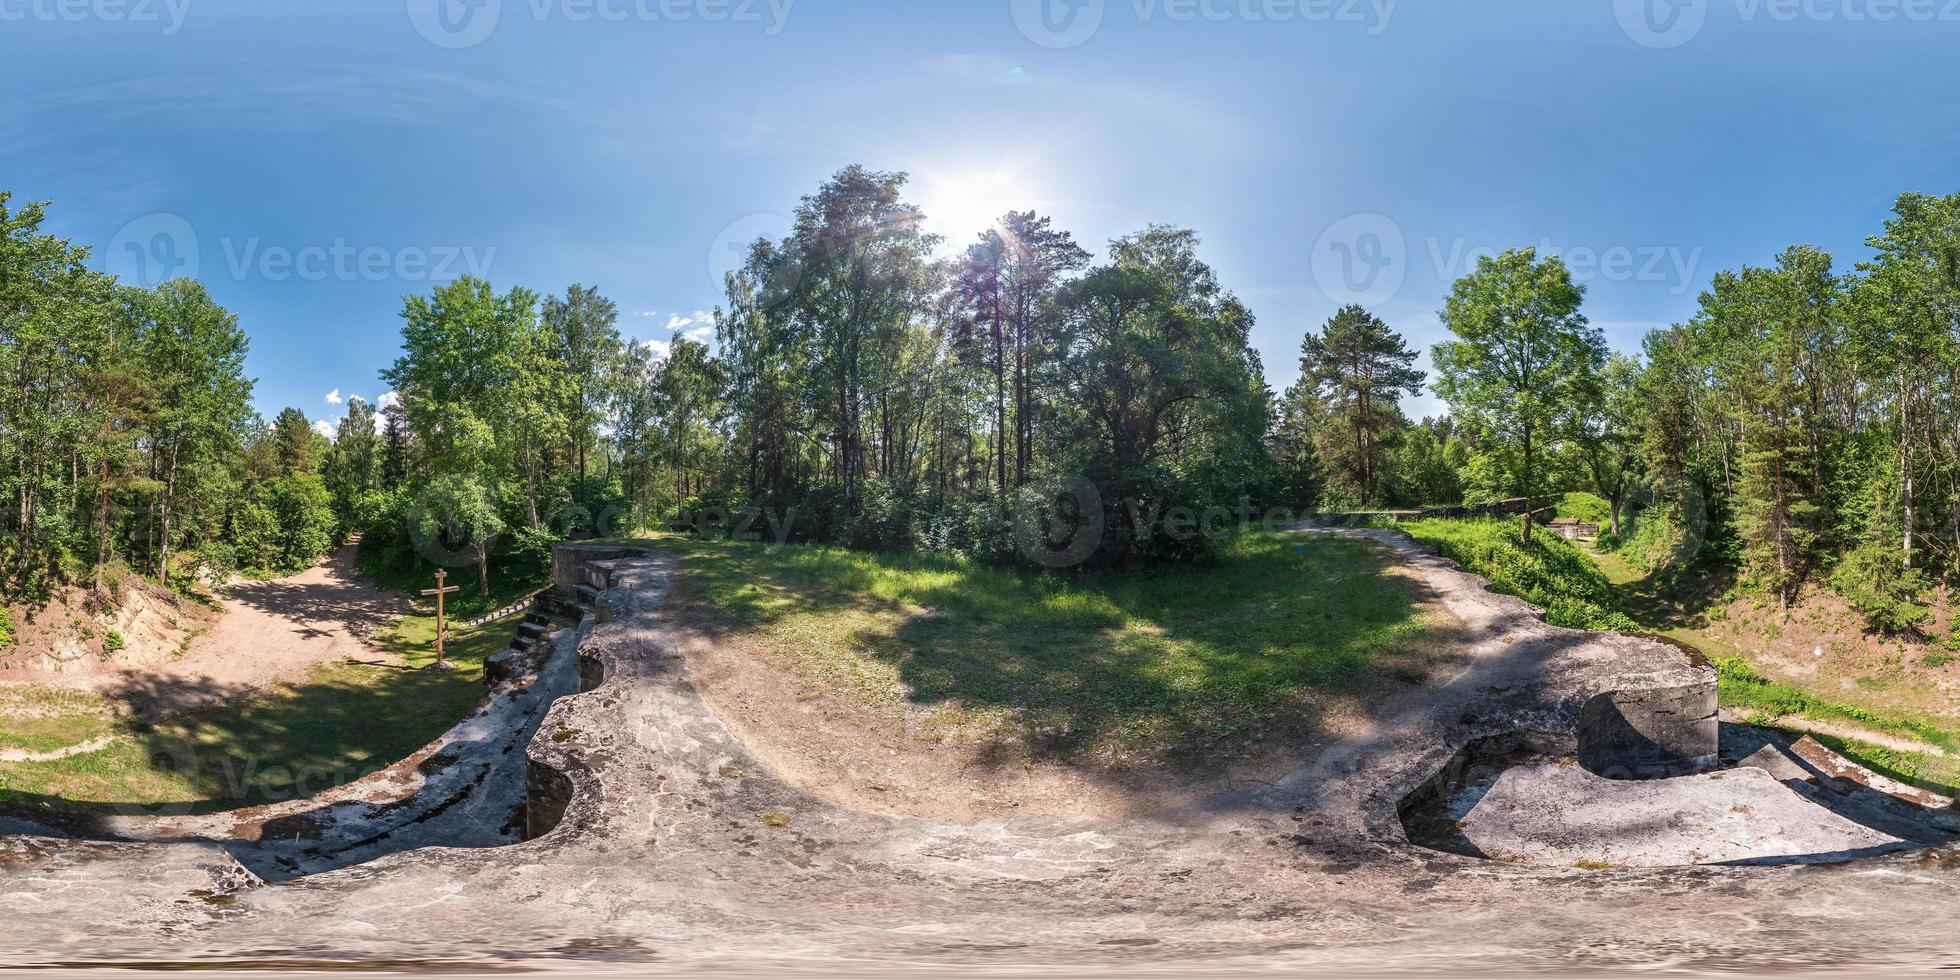 panorama complet et harmonieux 360 par 180 degrés vue d'angle sur le dessus forteresse militaire abandonnée en ruine de la première guerre mondiale dans la forêt en projection équirectangulaire équidistante sphérique photo